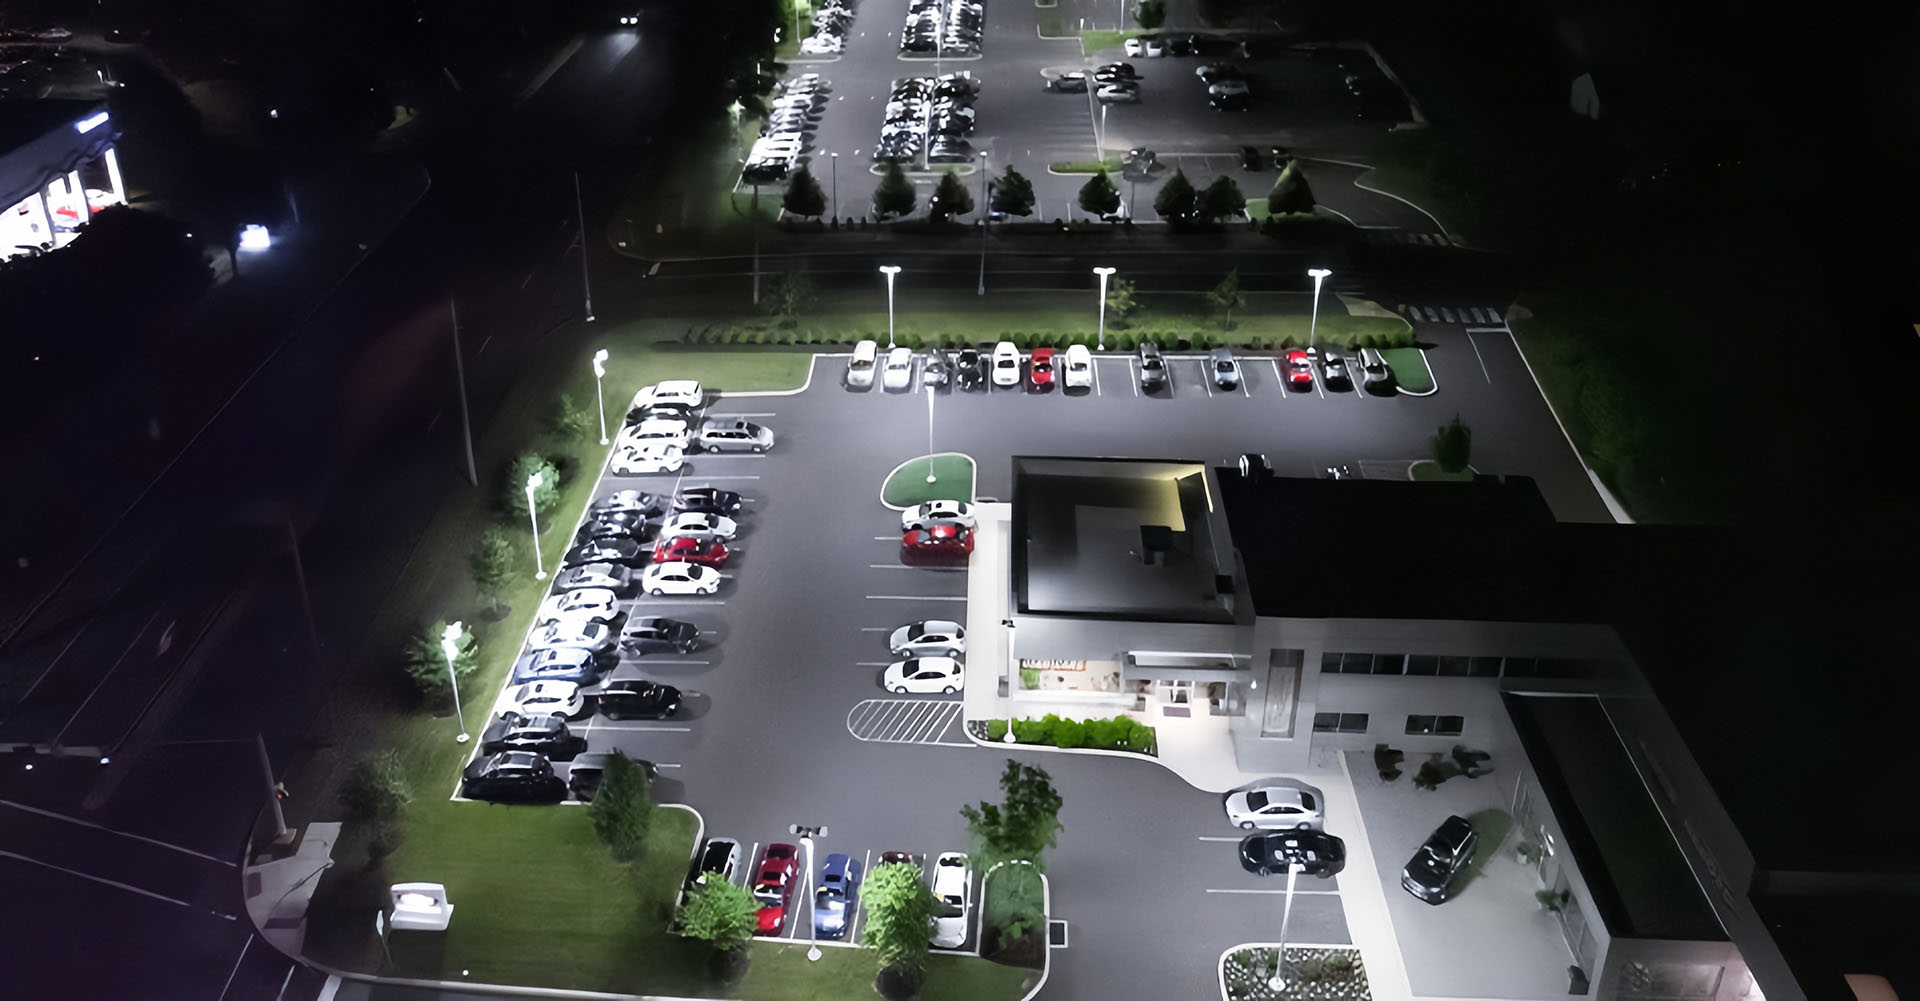 Outdoor parking lot lighting